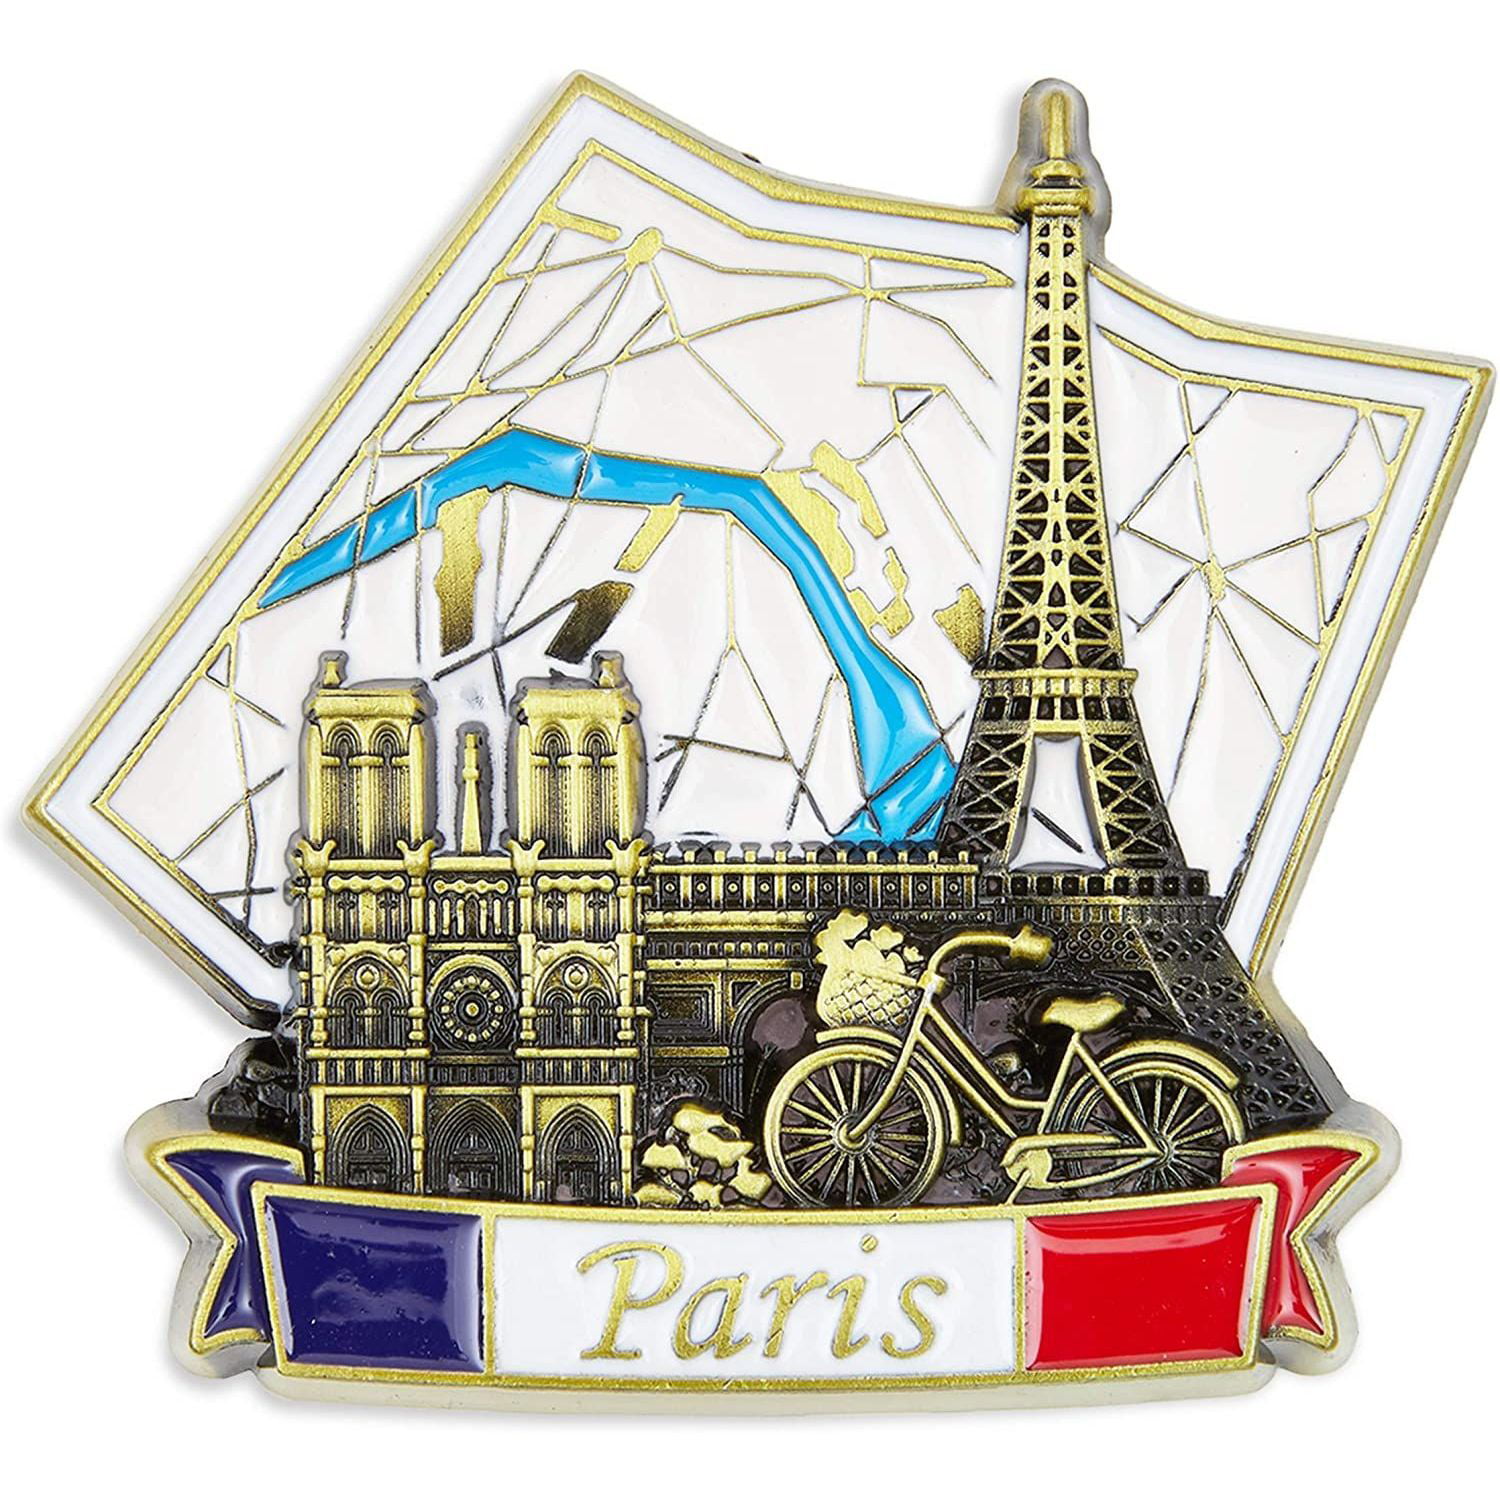 Retro Paris Tower Fridge Magnet Tourist Place Design Souvenir Collectables Gifts